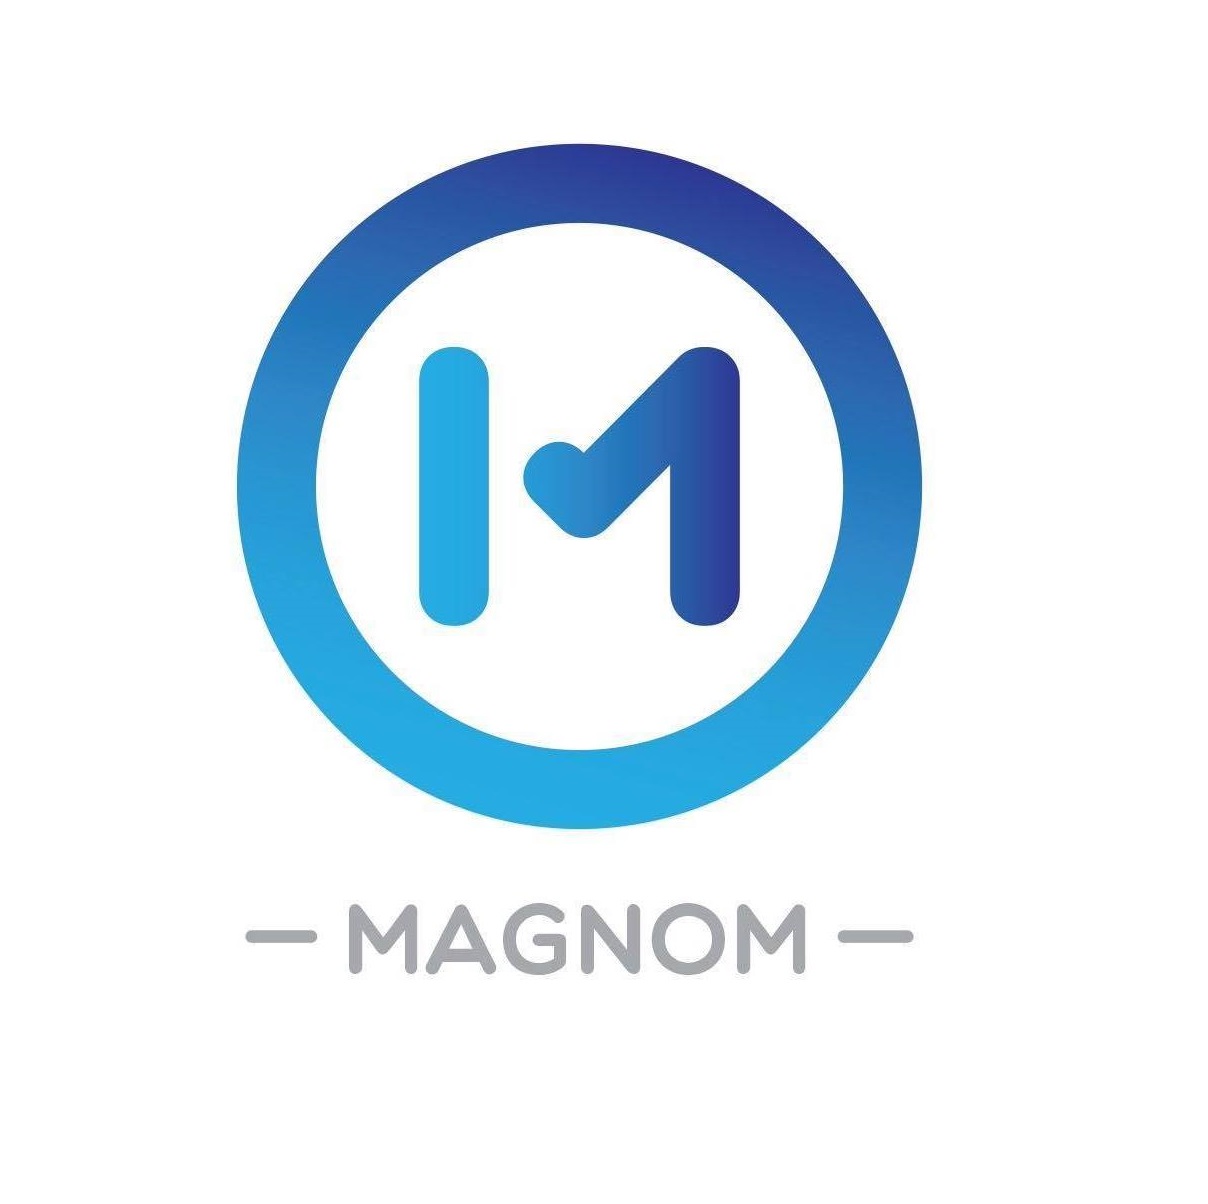 Magnom Holding Company